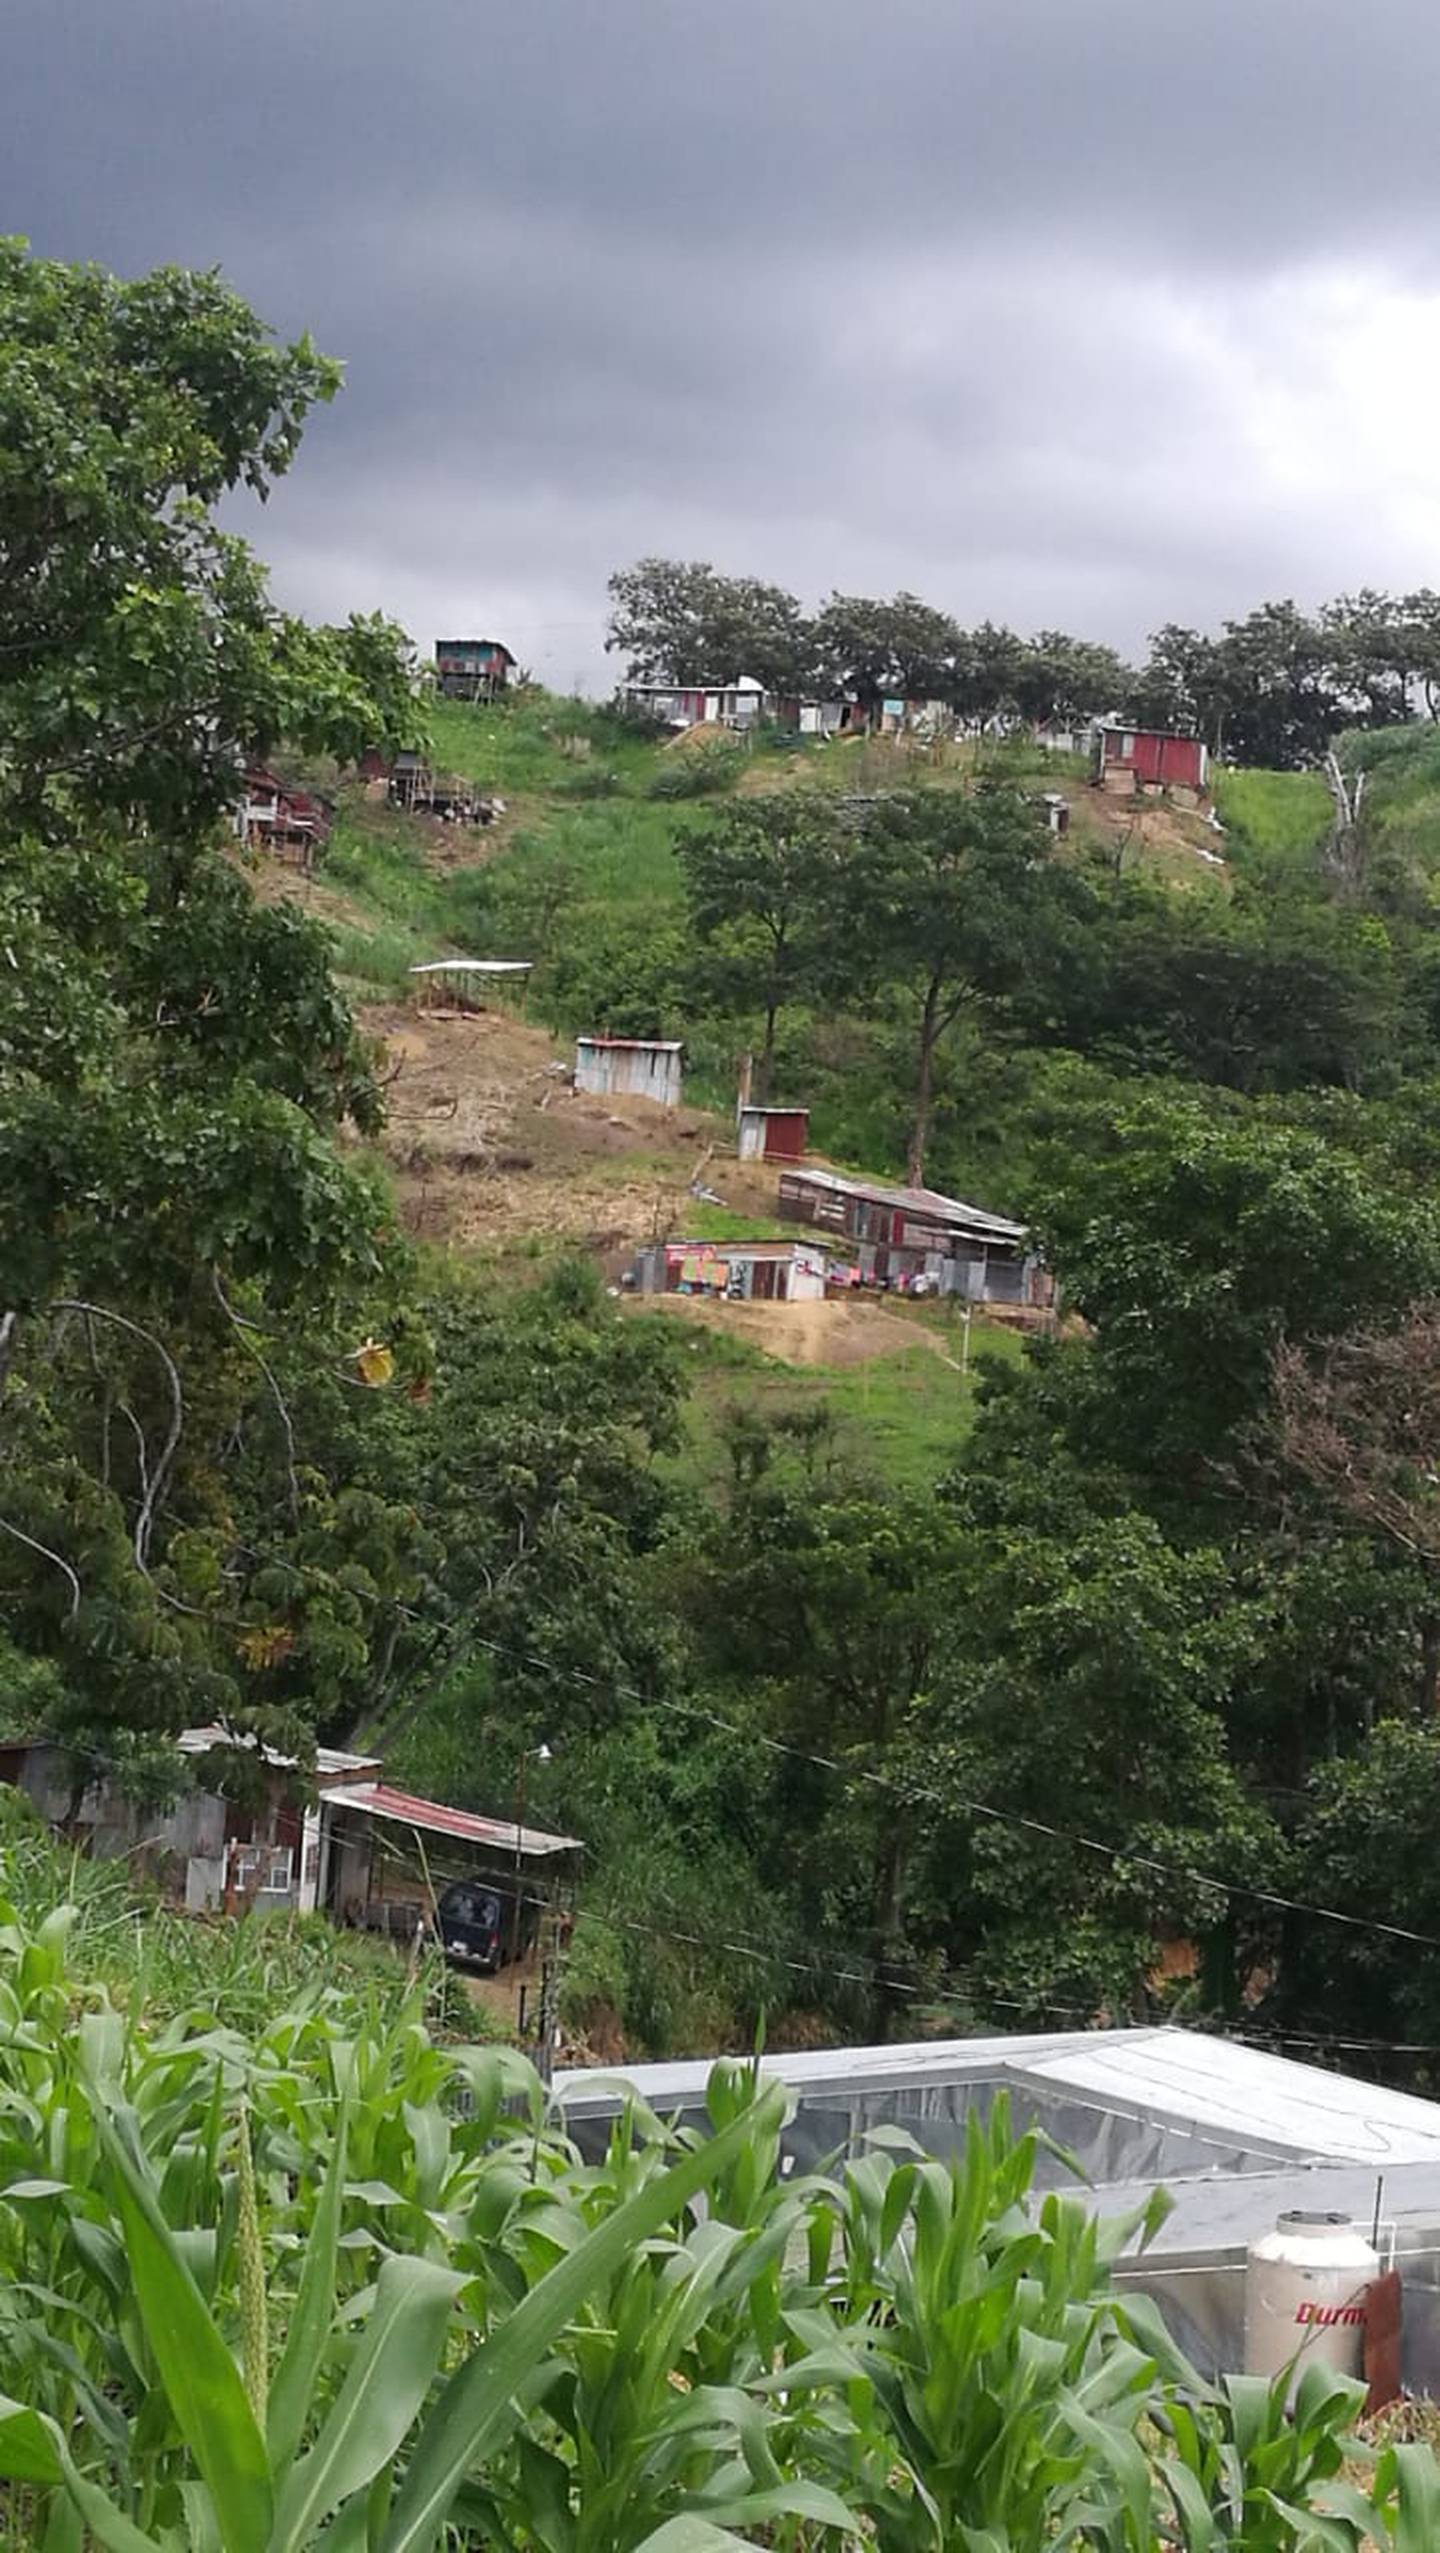 Precario Linda Vista de Alajuelita, conocido popularmente como La Chanchera